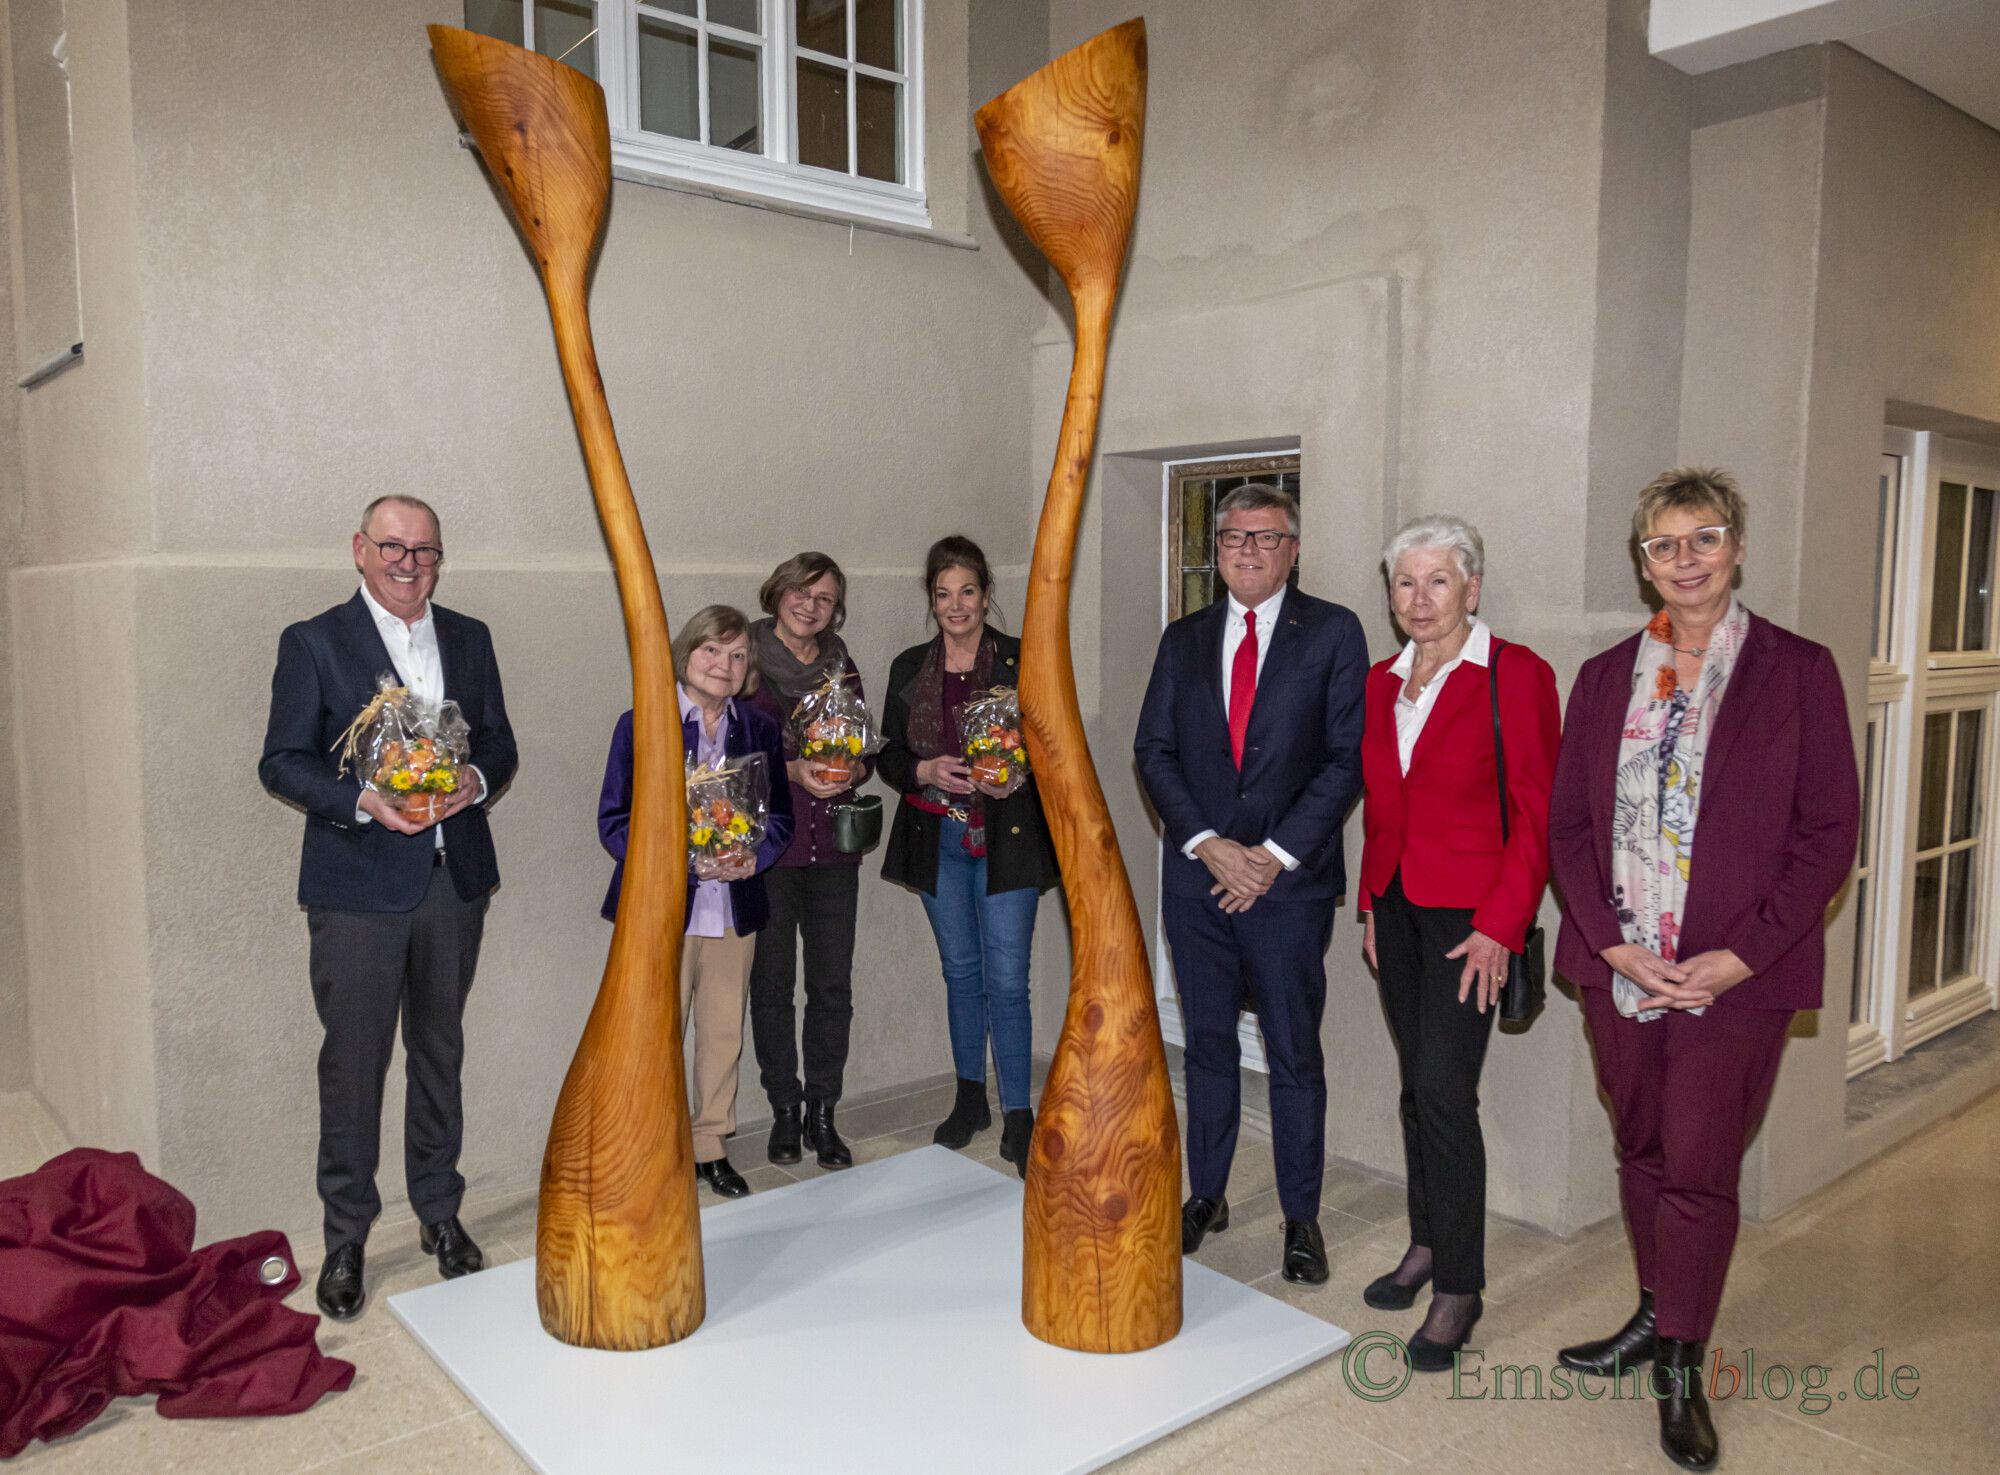 Im Rahmen des Stifterforums überreichte die Stiftung "Gutes Tun" der Gemeinde das Kunstwerk "Holzblüterpaar" des Künstlers Gordon Brown als Dauerleihgabe für das neue Rat- und Bürgerhaus. (Foto: P. Gräber - Emscherblog)